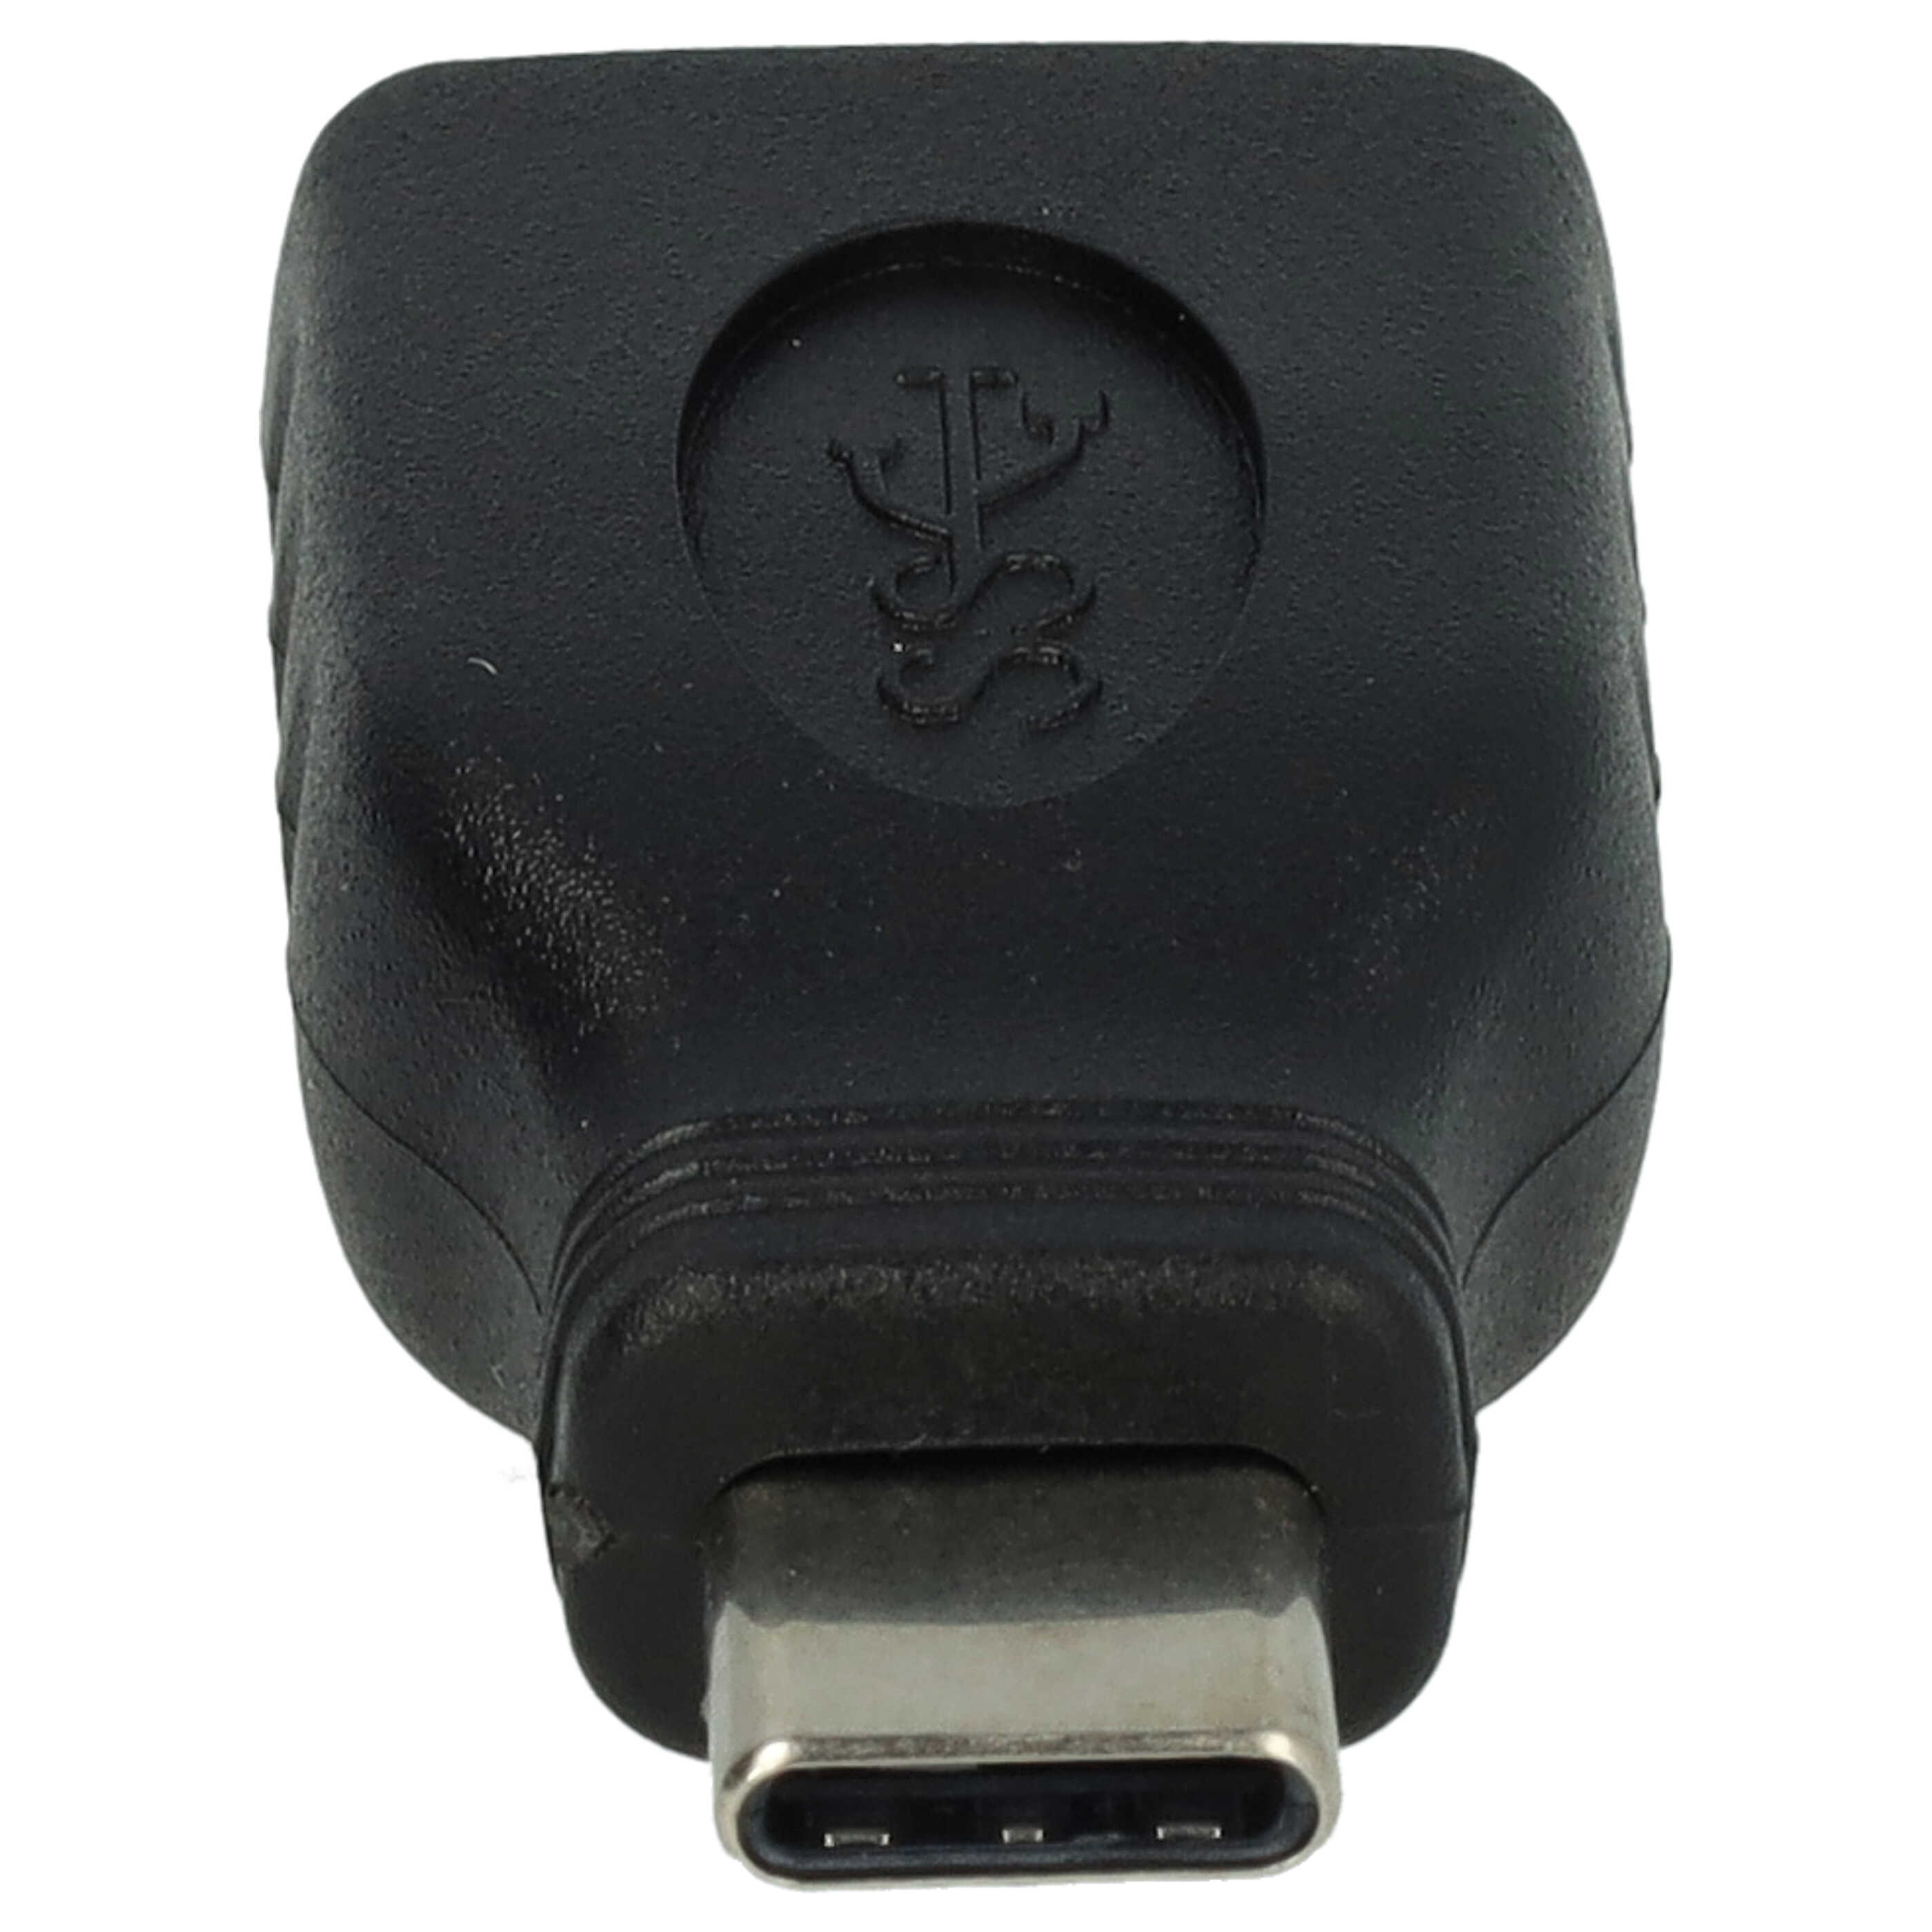 vhbw Adaptateur USB type C vers USB 3.0 compatible avec P9 Huawei et autres - noir